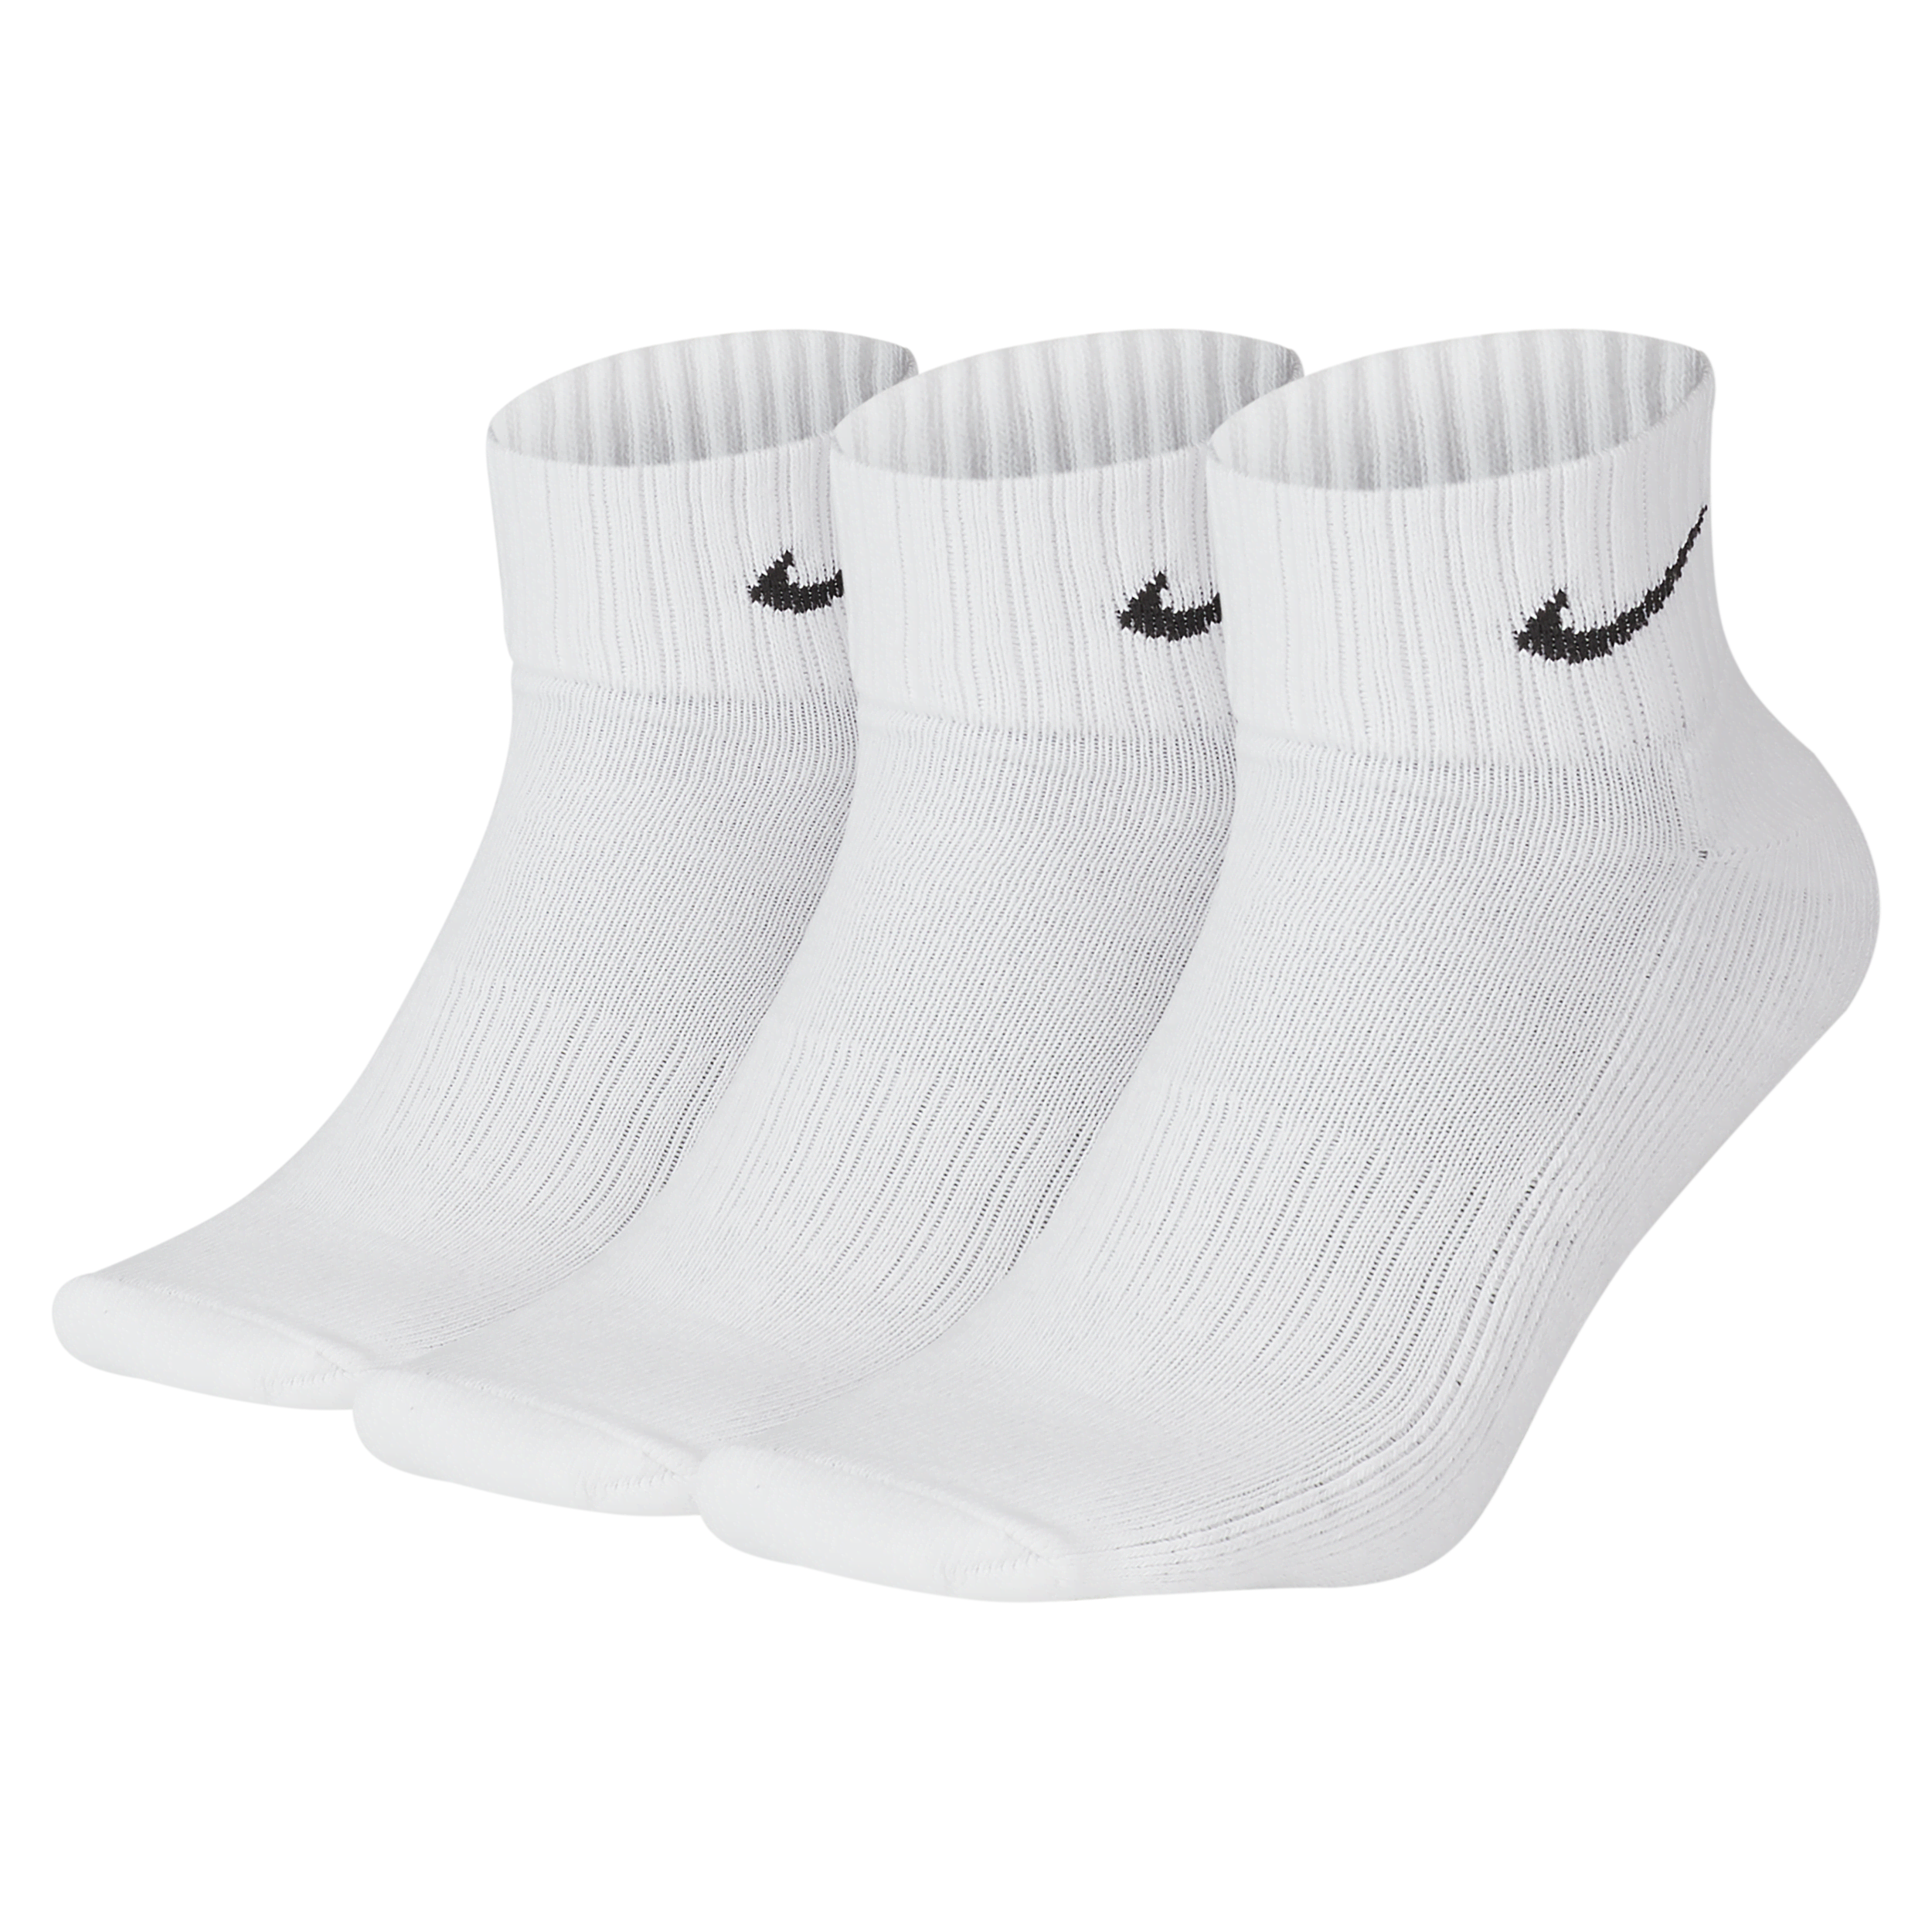 Calze alla caviglia ammortizzate Nike (3 paia) - Bianco